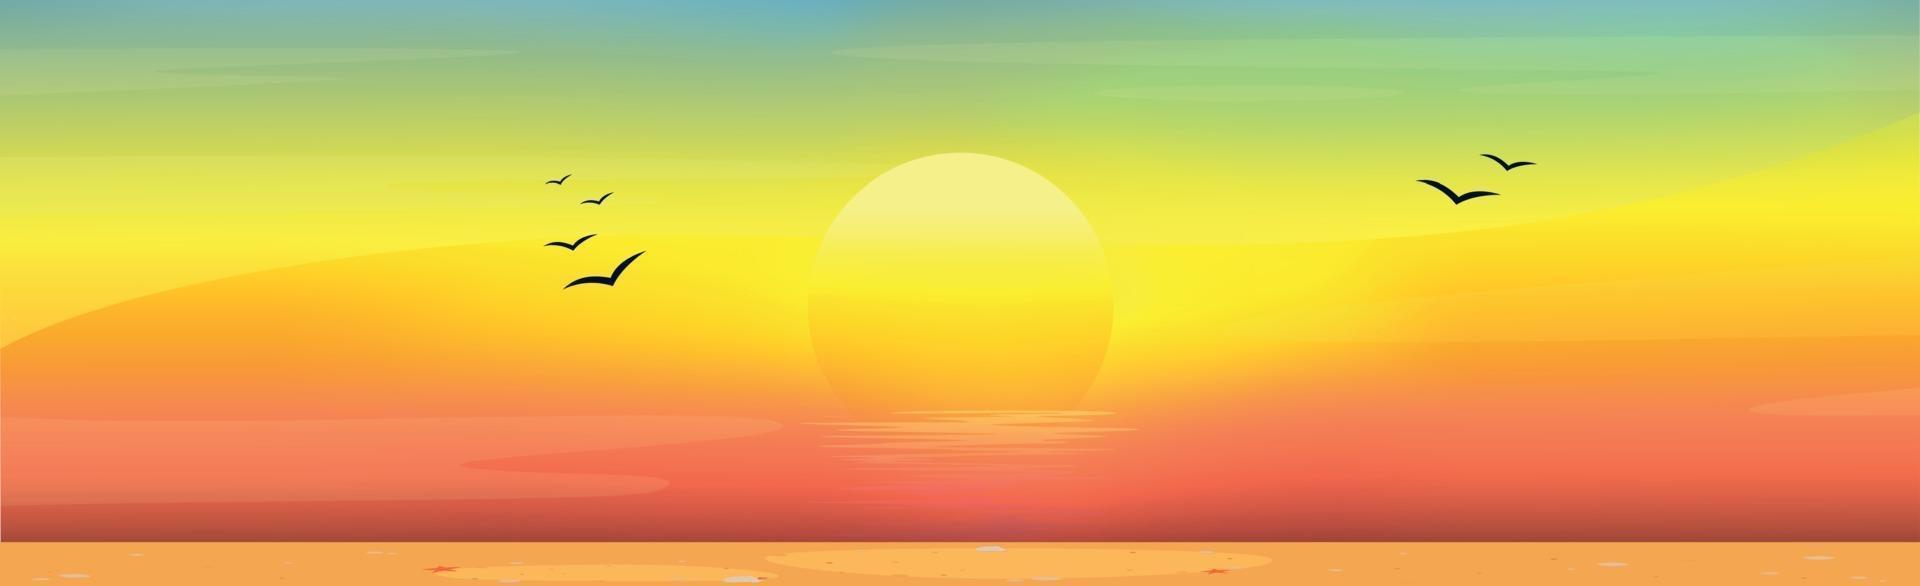 illustration av en solig sandstrand vid solnedgången vektor